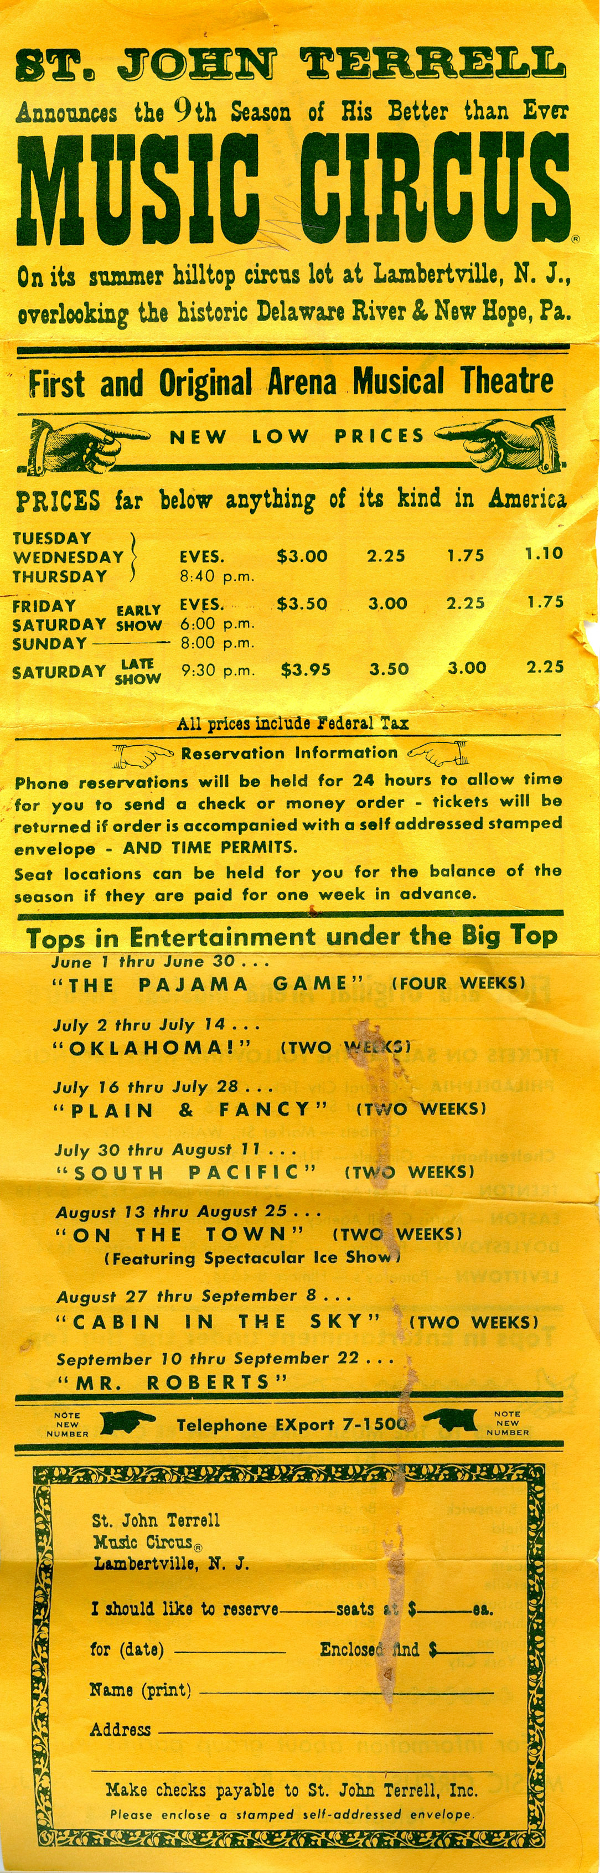 1957 Ticket Order Form Flyer front